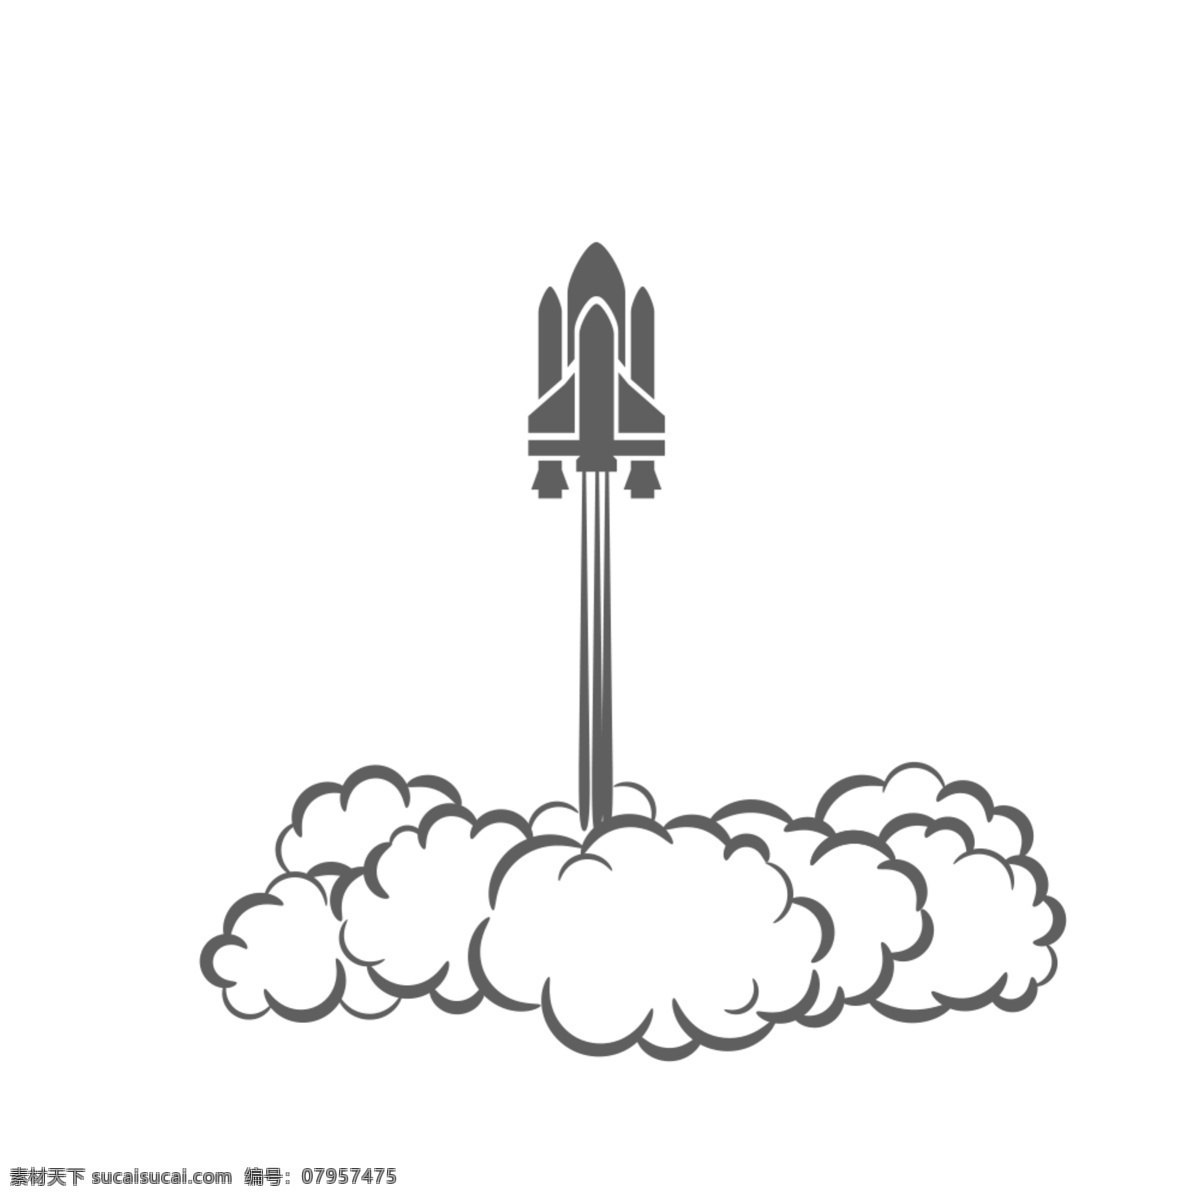 火箭发射 火箭 发射 云朵